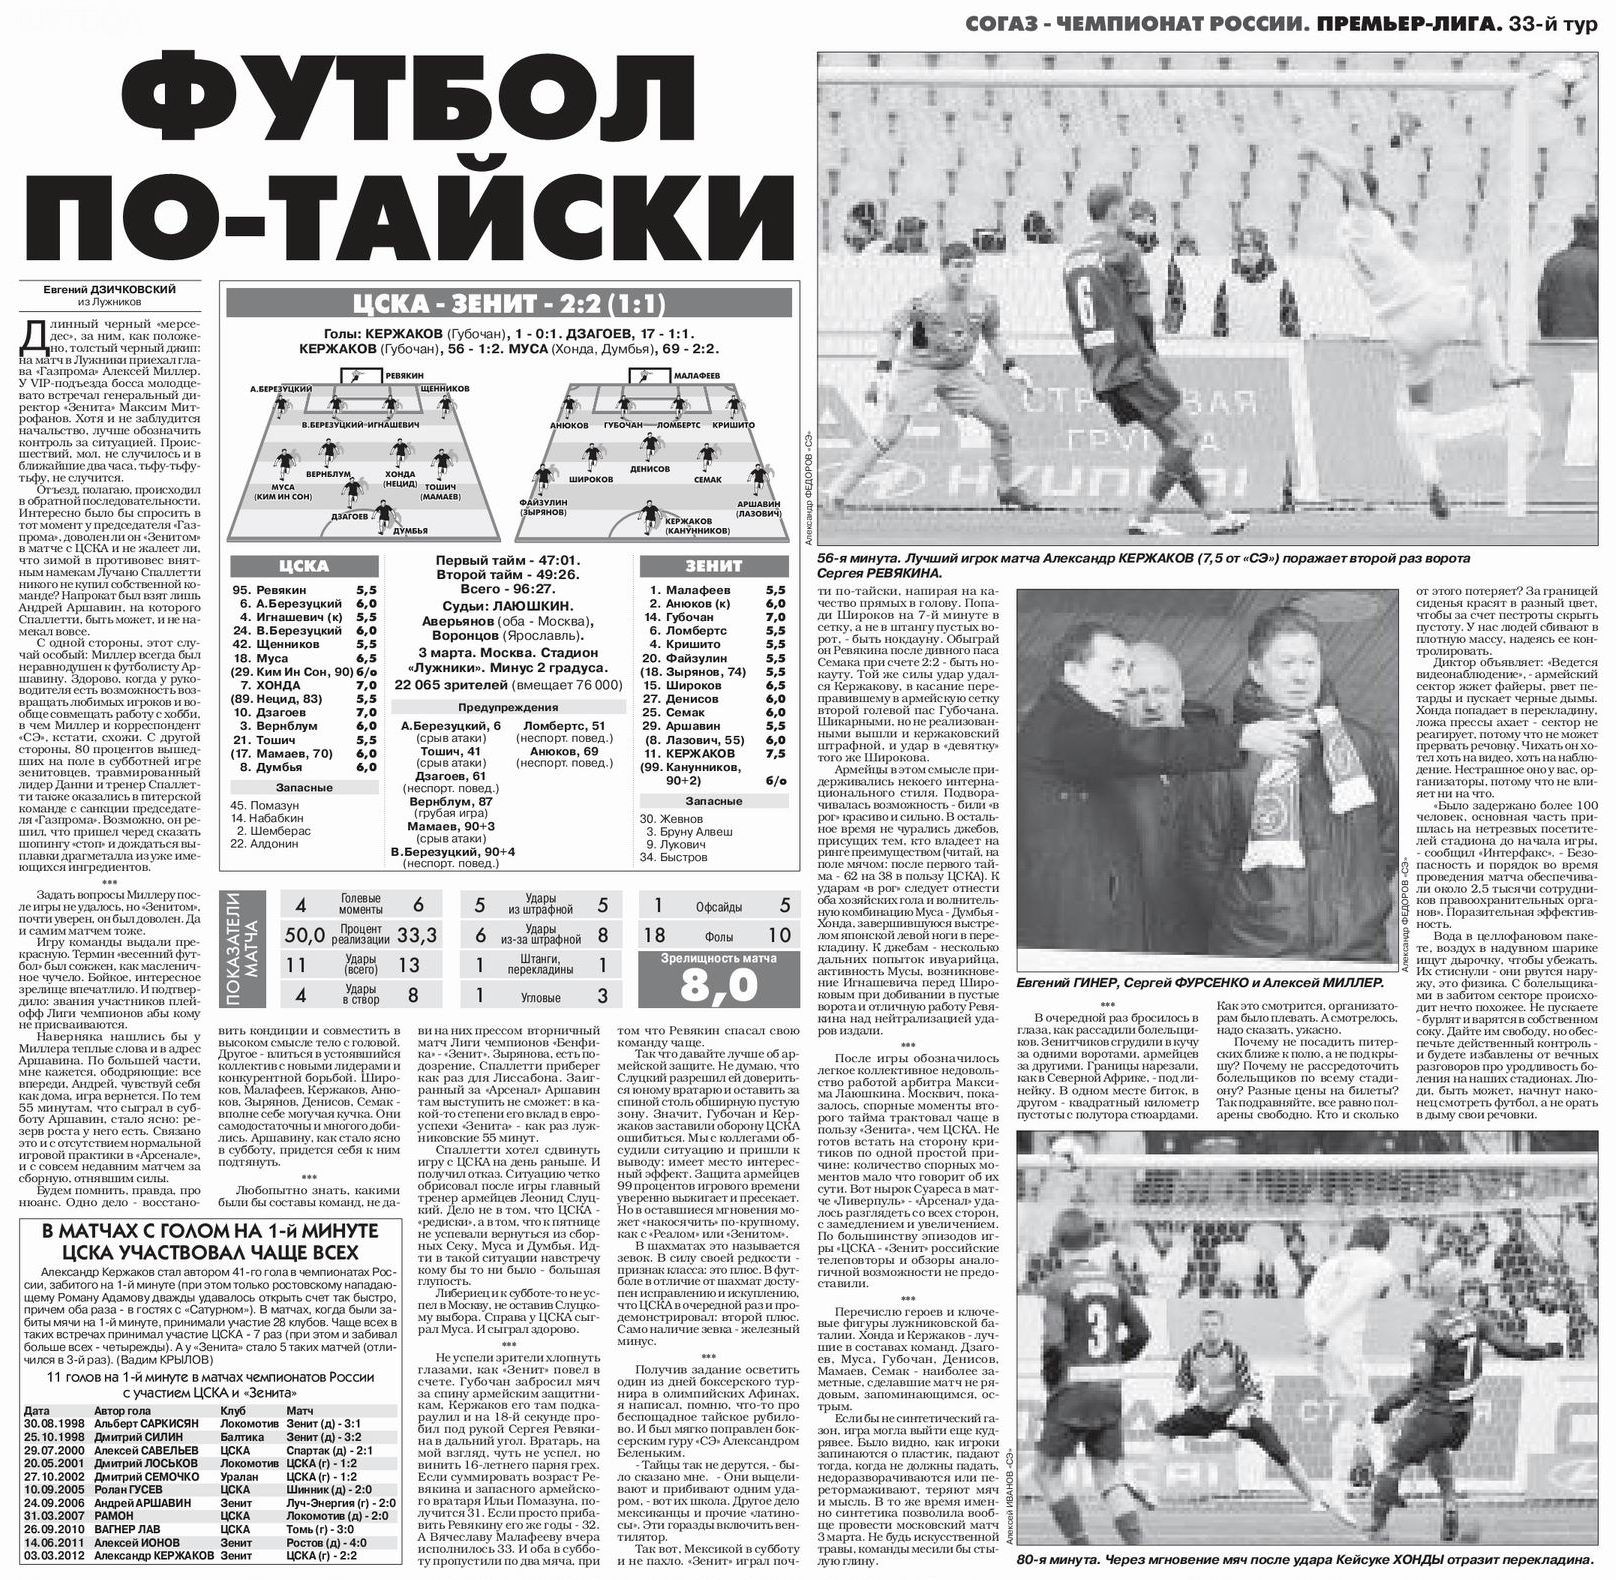 2012-03-03.CSKA-Zenit